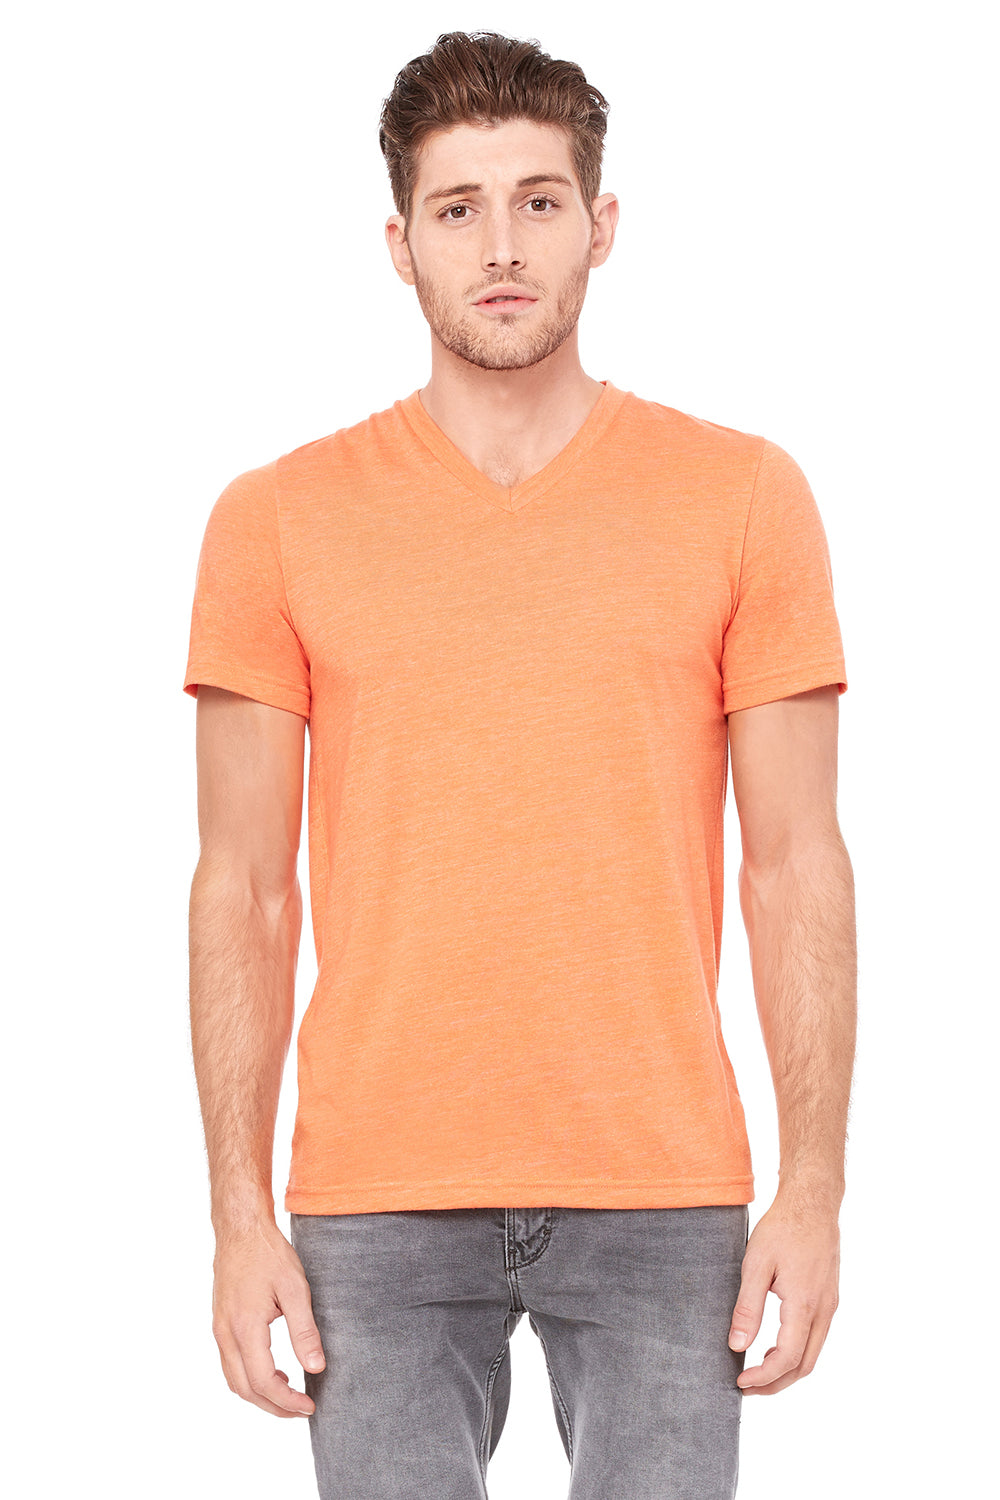 Bella + Canvas 3415C Mens Short Sleeve V-Neck T-Shirt Orange Front